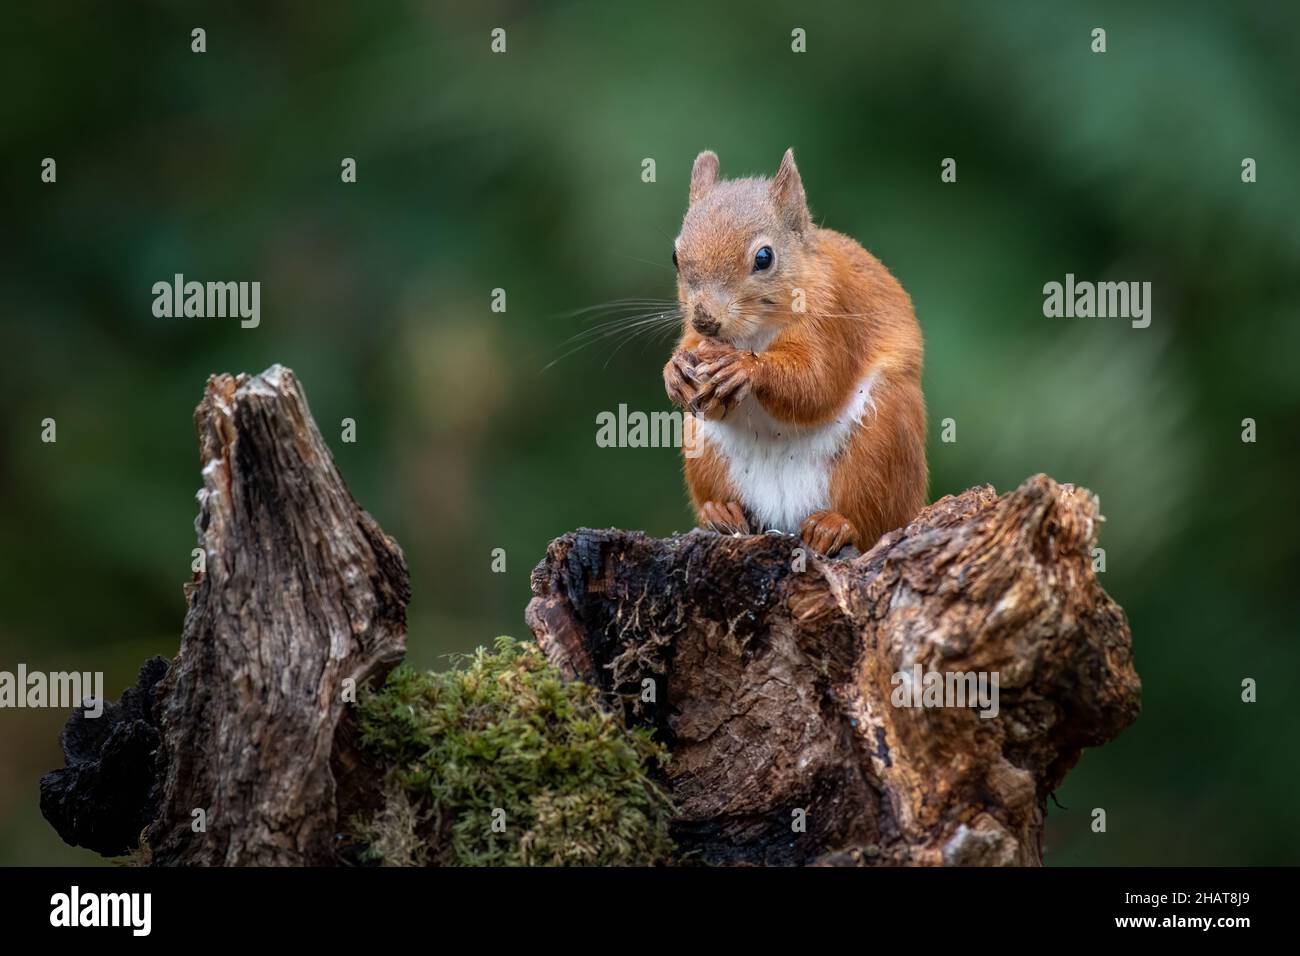 Una ardilla roja sentada en un viejo árbol se topa comiendo una avellana Foto de stock